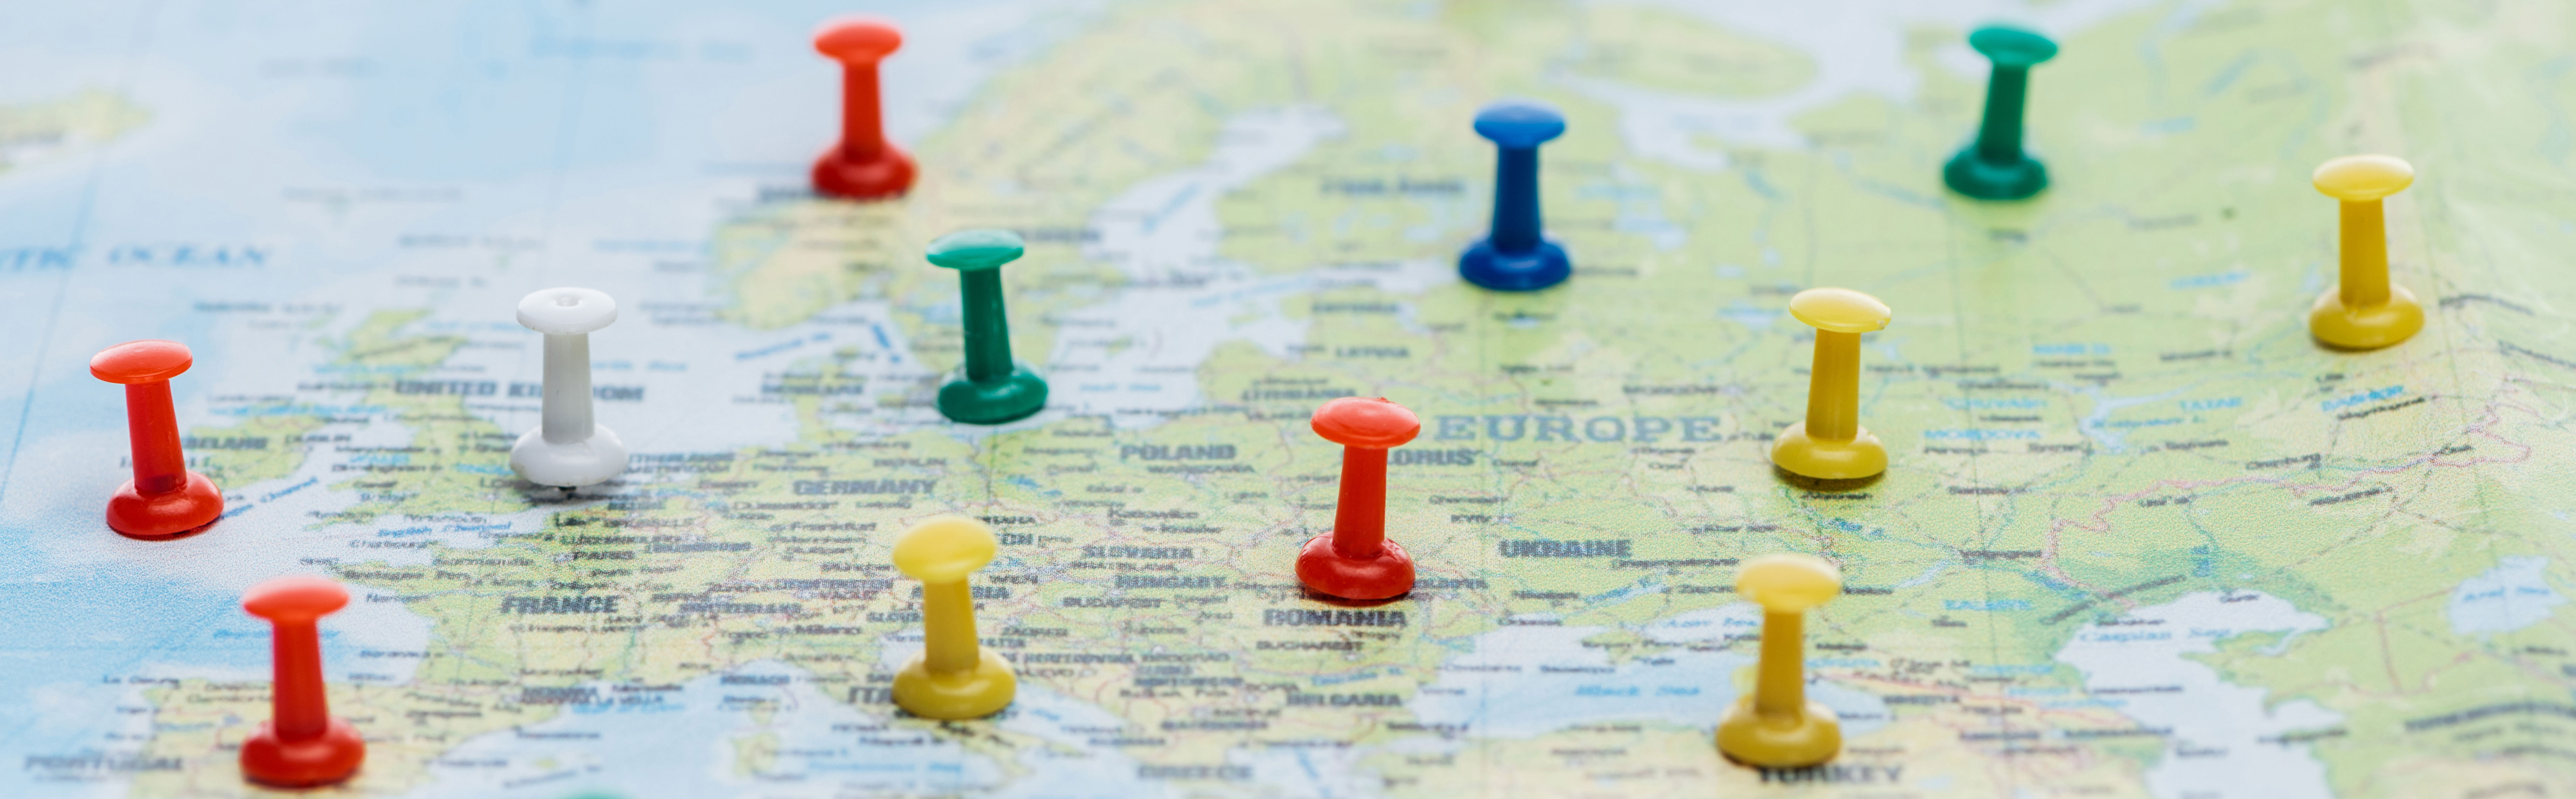 En dekorativ karta av Europa med färgglada nålar 